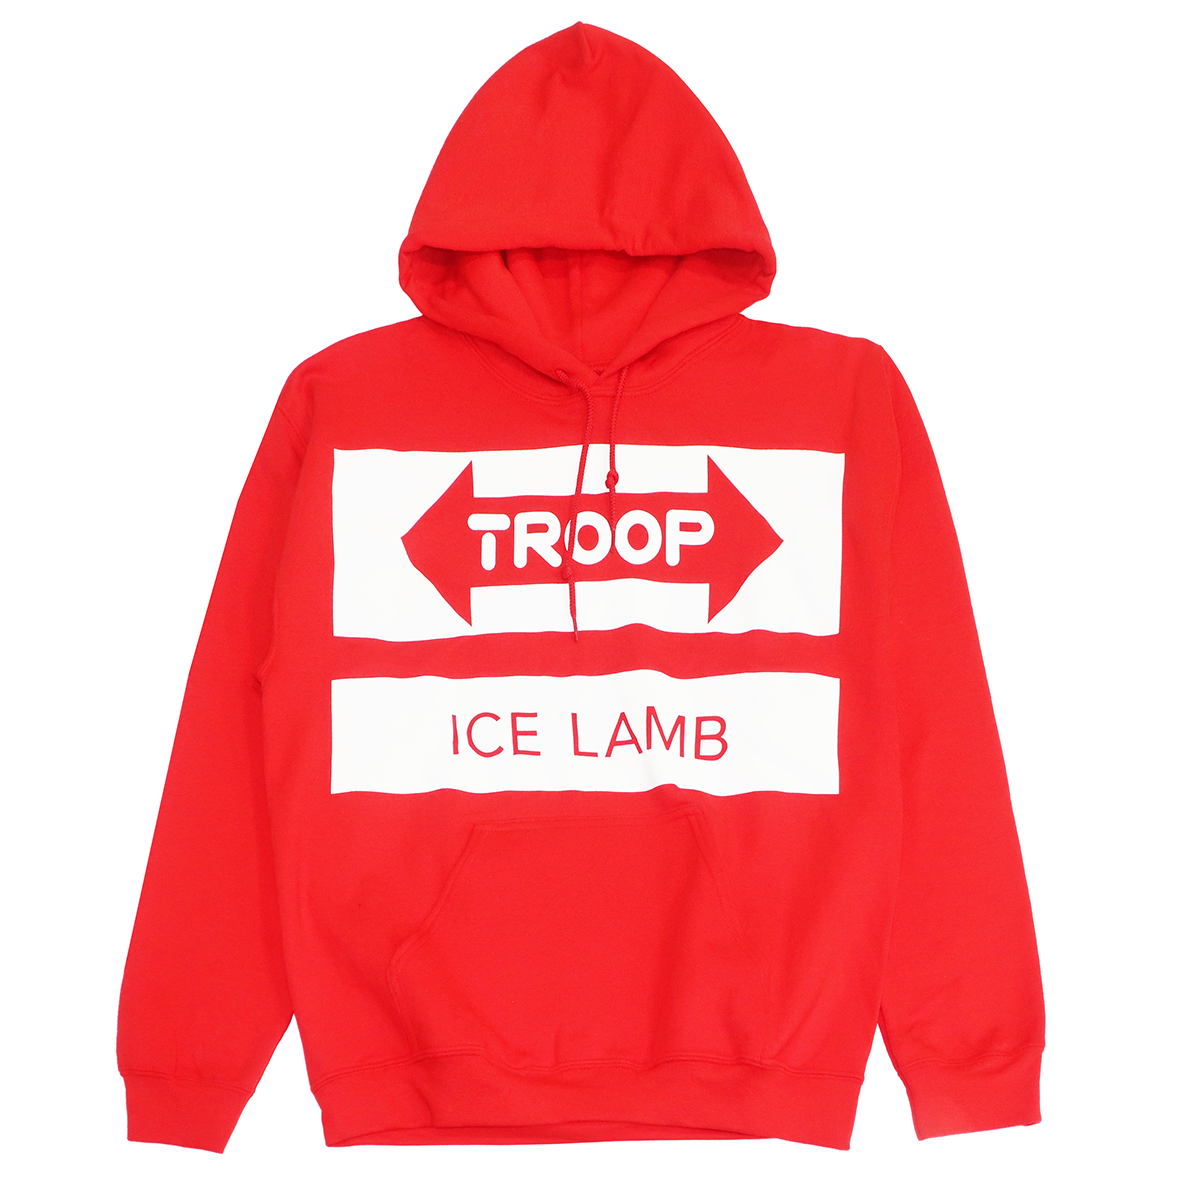 TROOP ICE LAMB HOODIE RED - TP173775